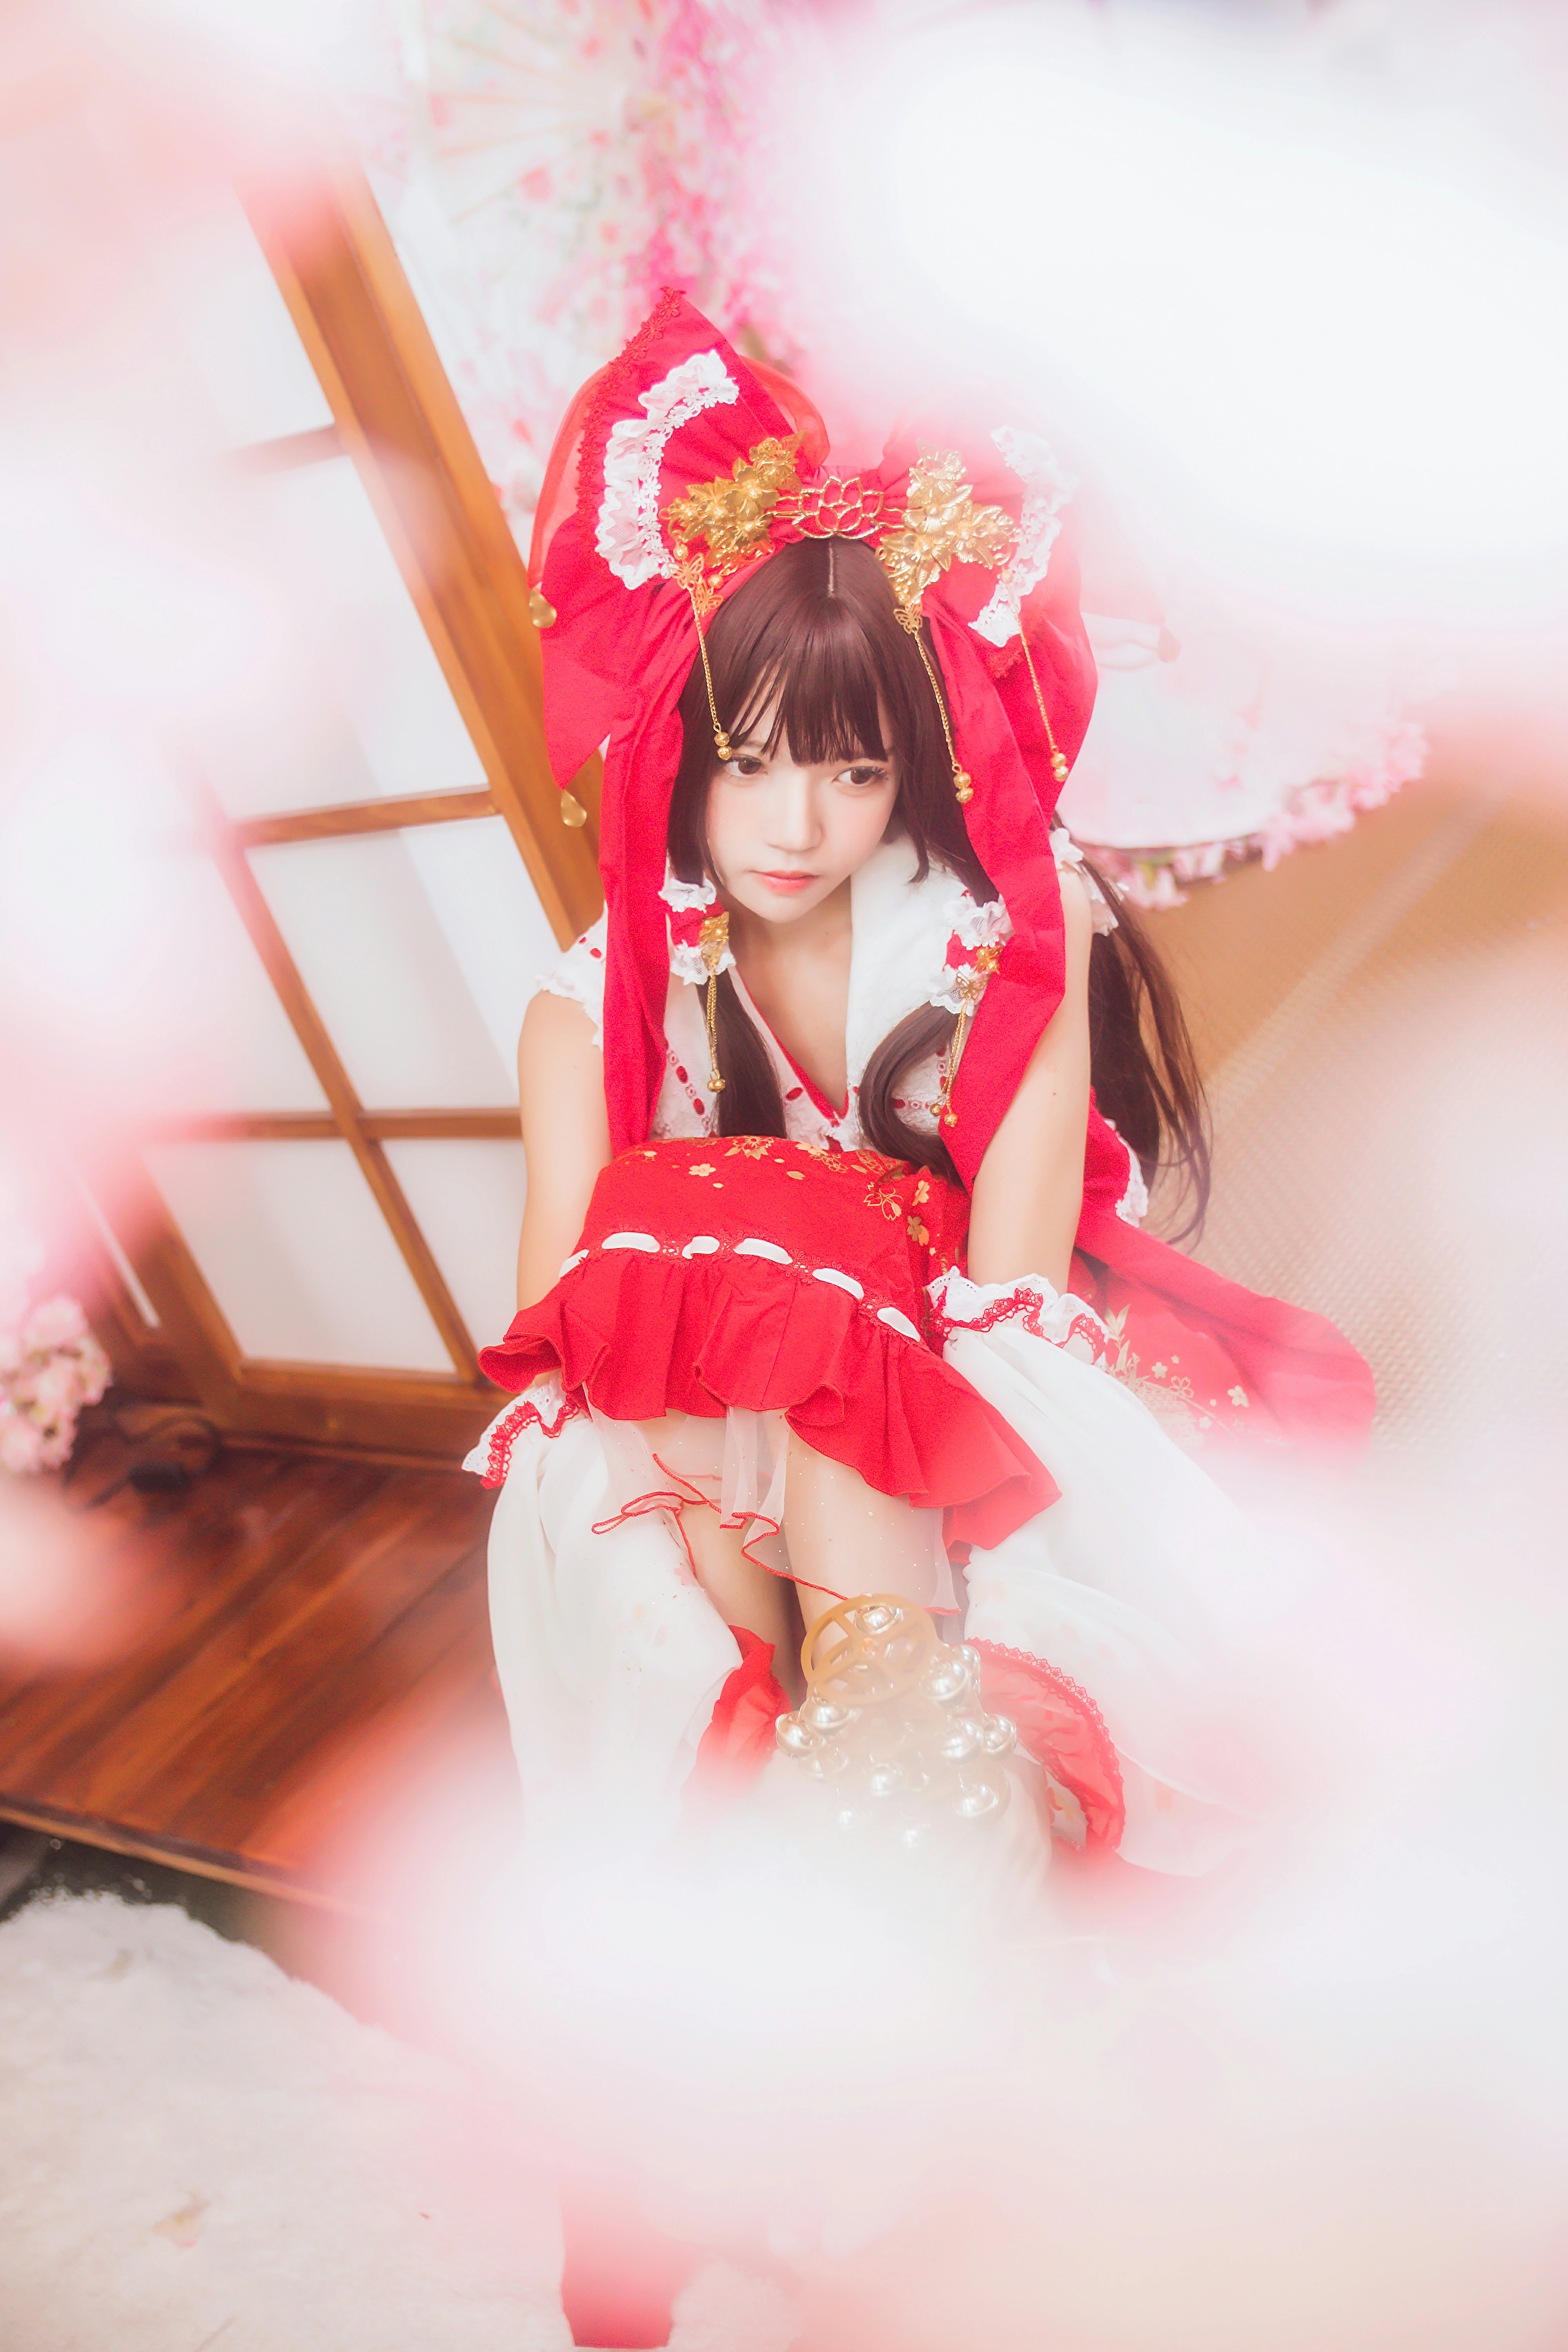 清纯少女小萝莉 桜桃喵 红色连身制服裙 和风写真,0023